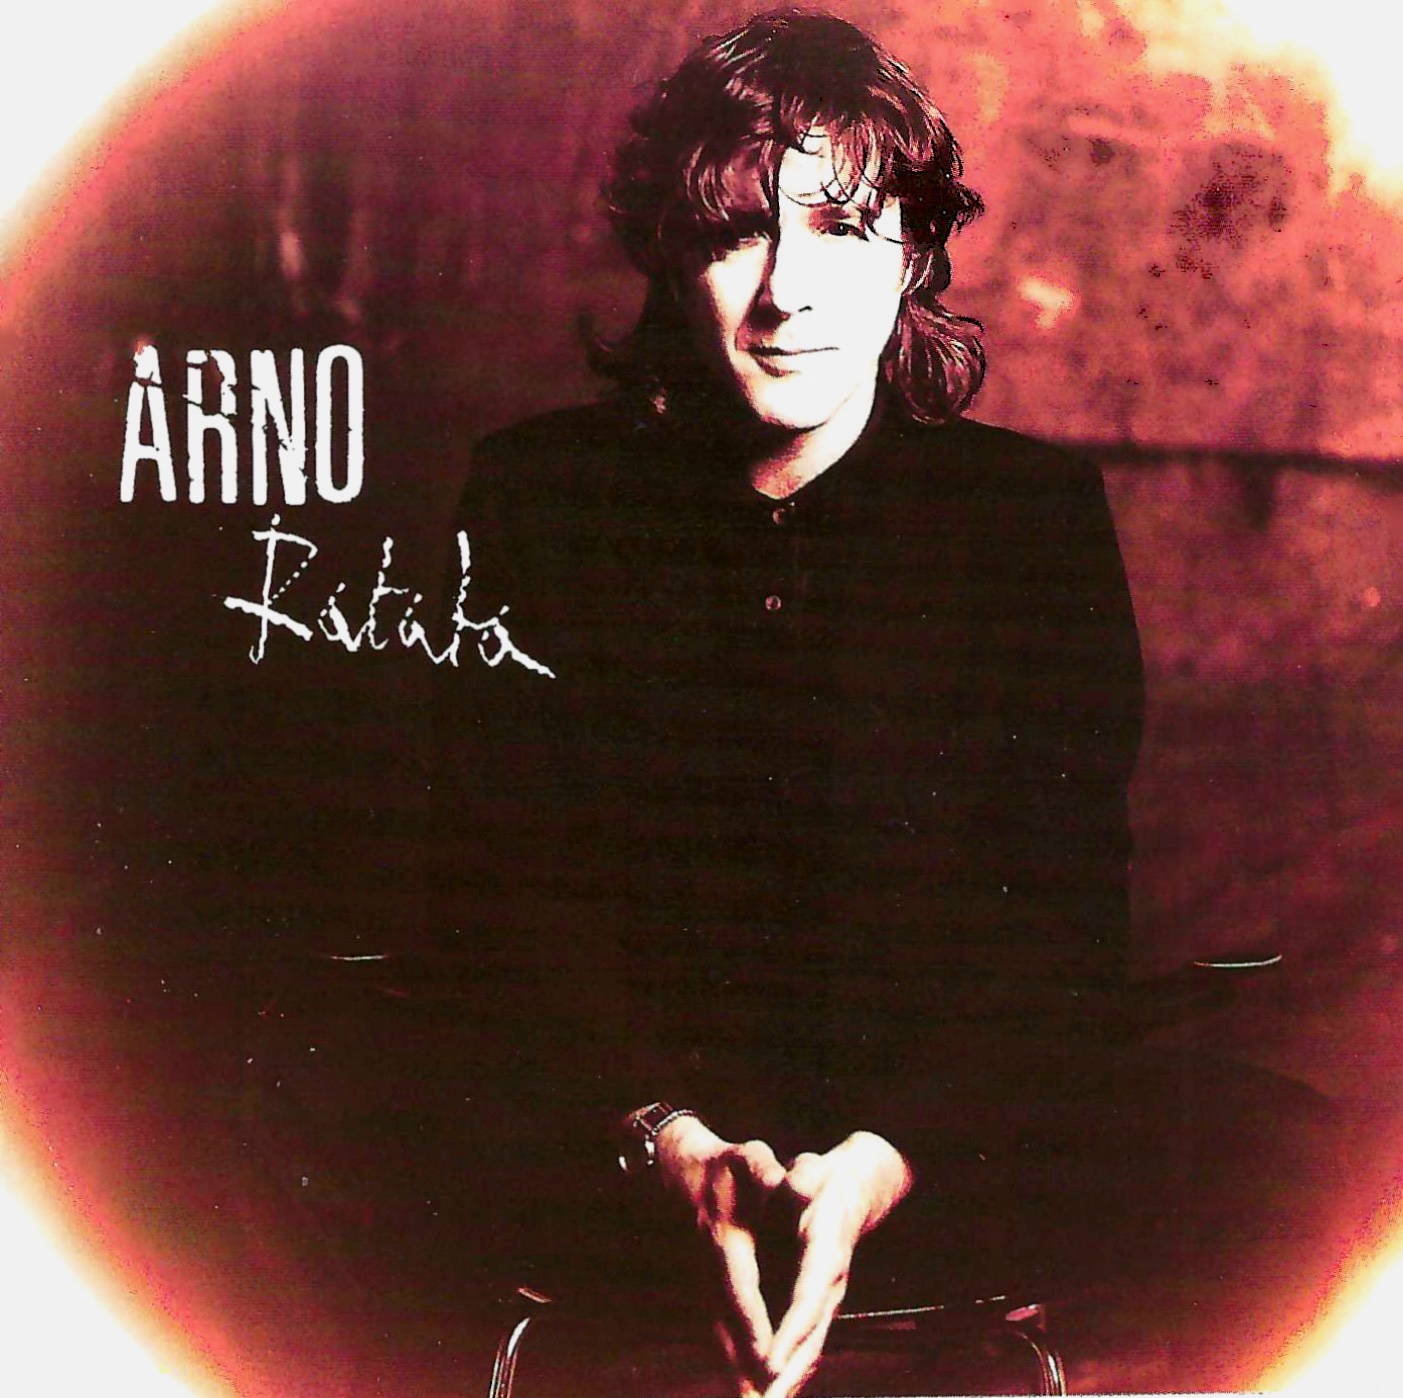 Arno album